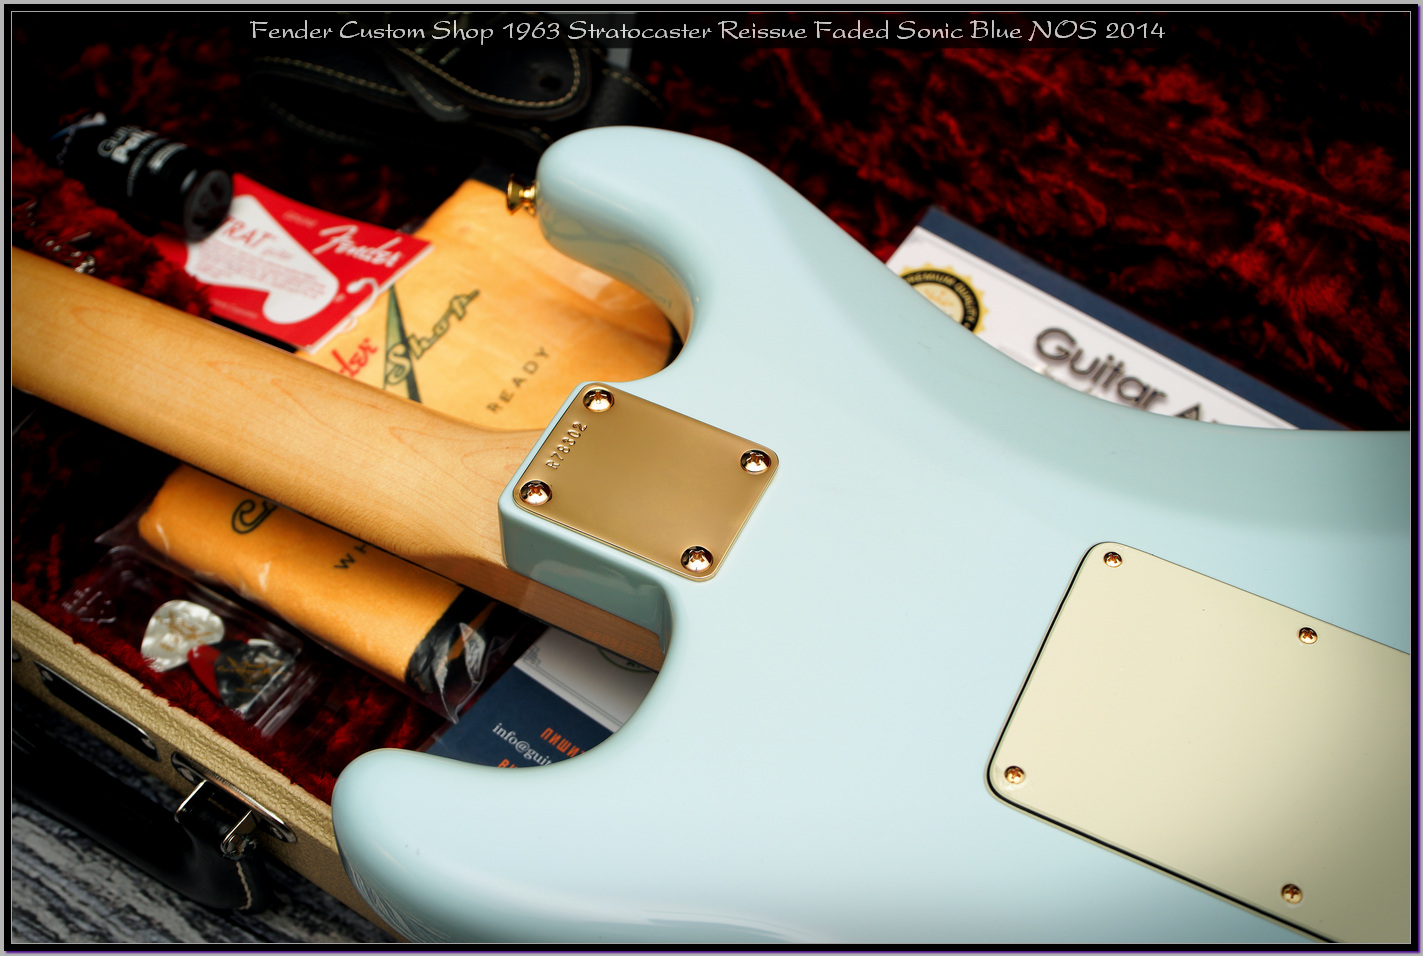 Fender Custom Shop 1963 Stratocaster Reissue Faded Sonic Blue NOS 2014 16_x1400.jpg